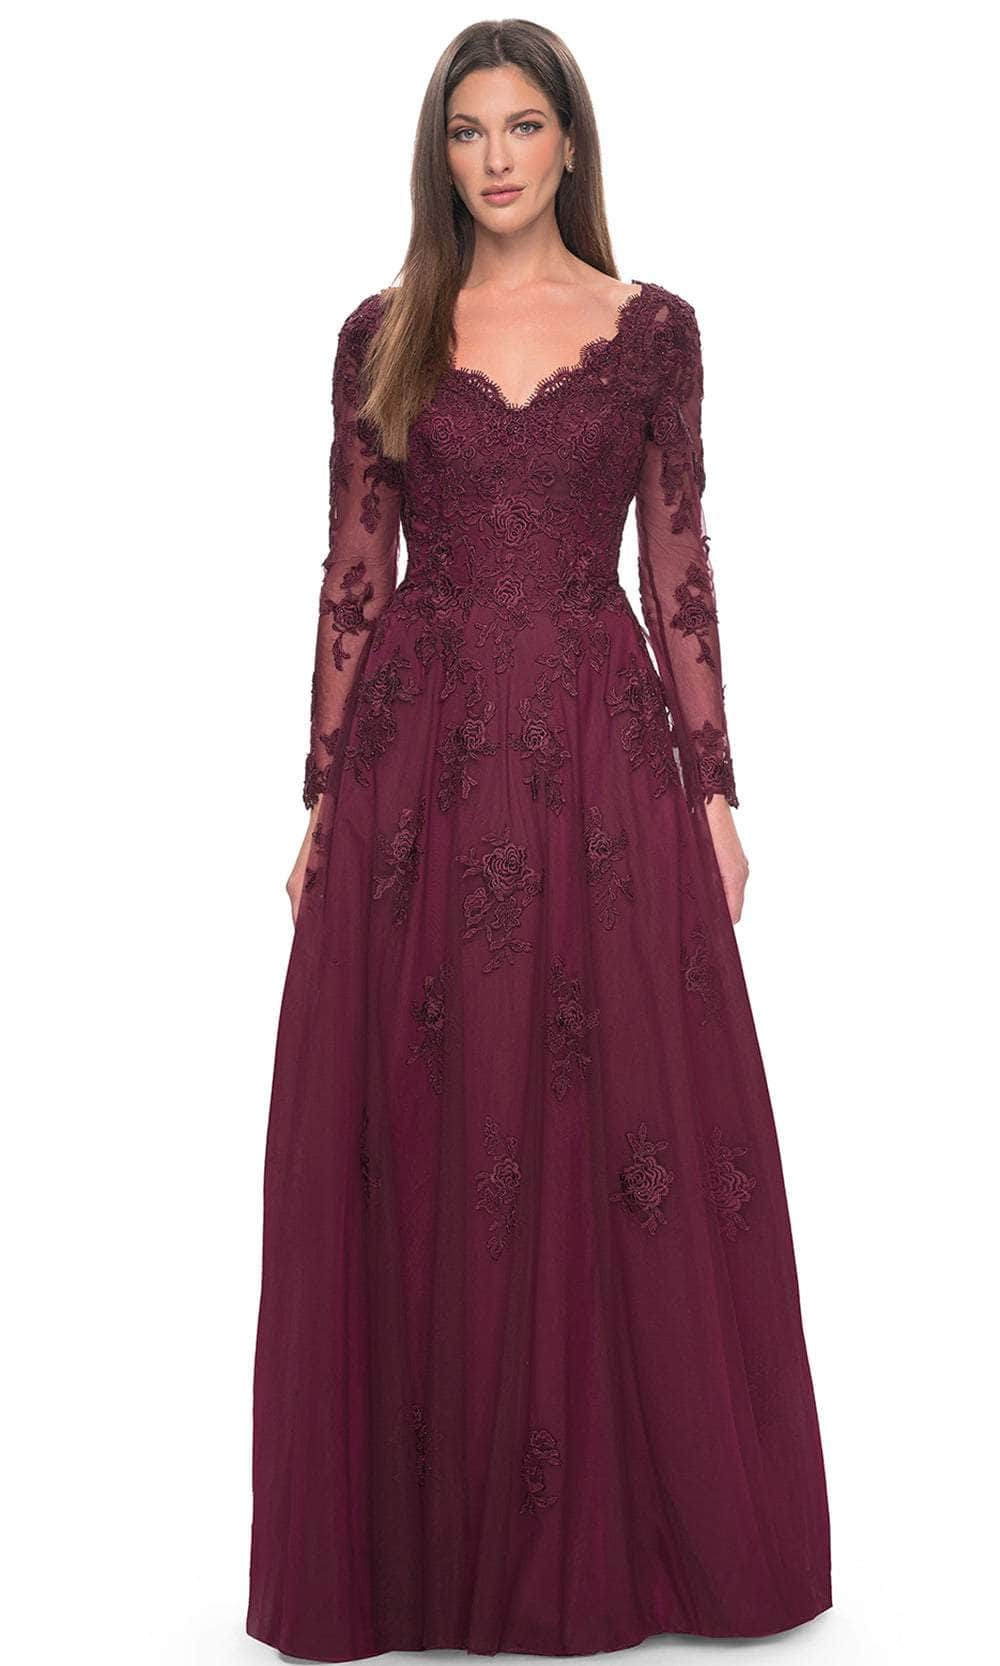 La Femme 30795 - Lace Ornate V-Neck Dress Mother of the Bride Dresses